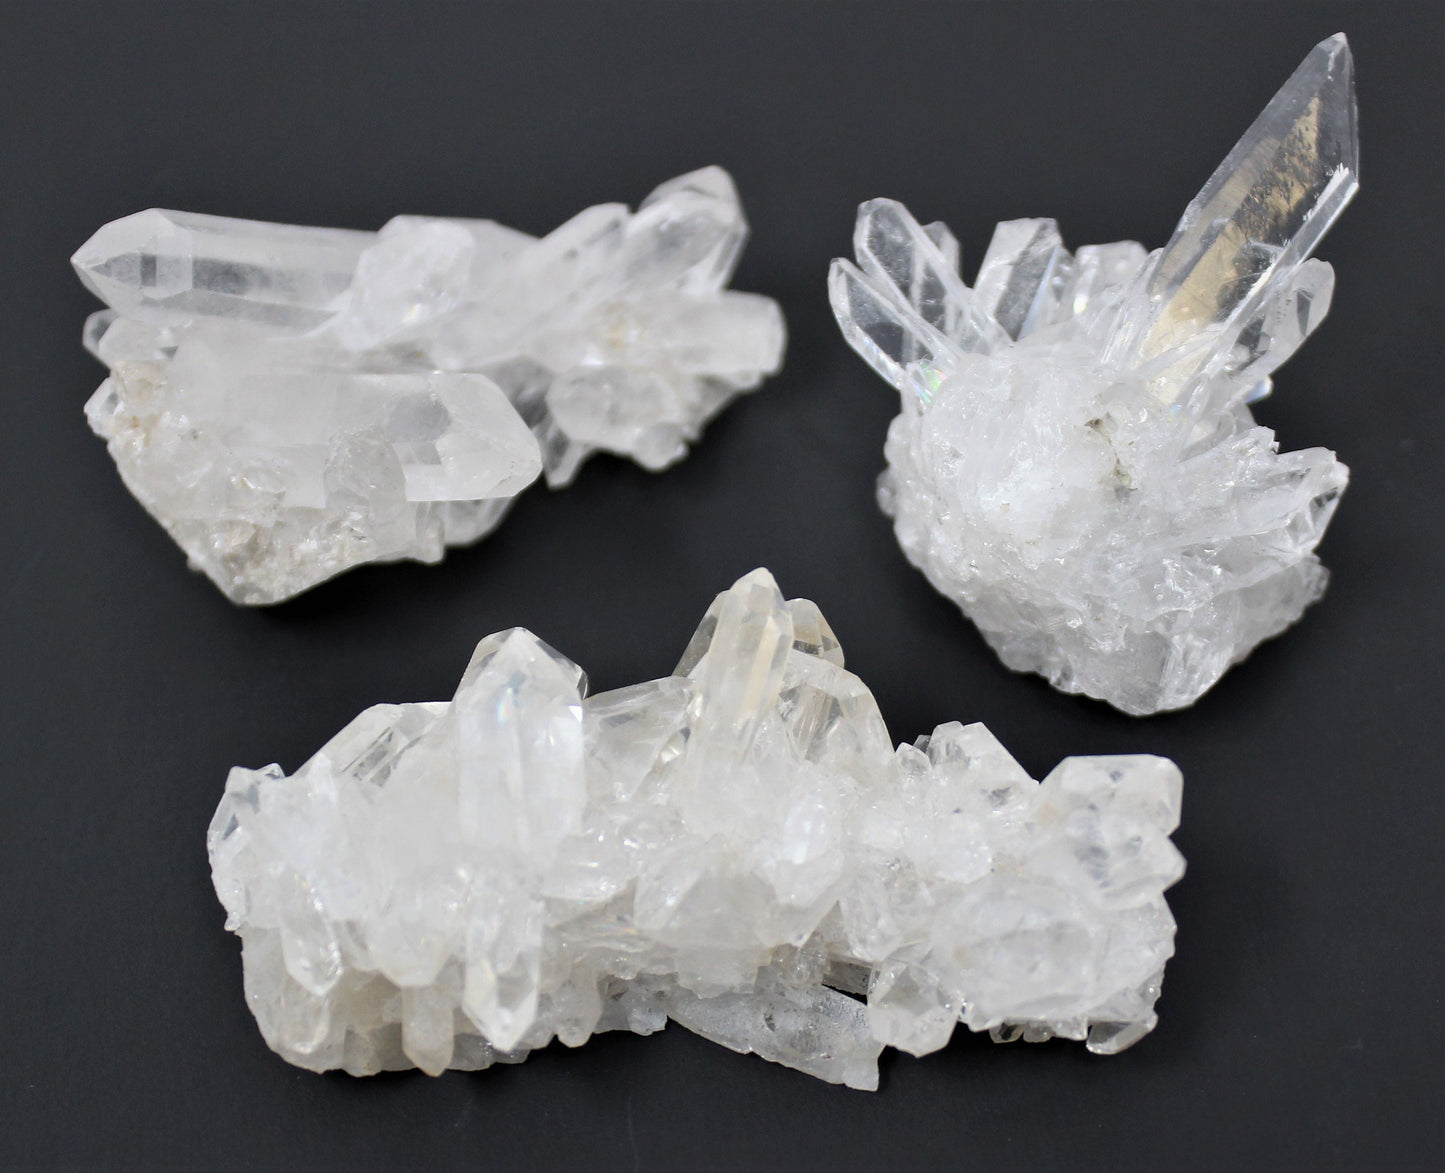 12 Piece Smoky Quartz And Clear Quartz Crystal